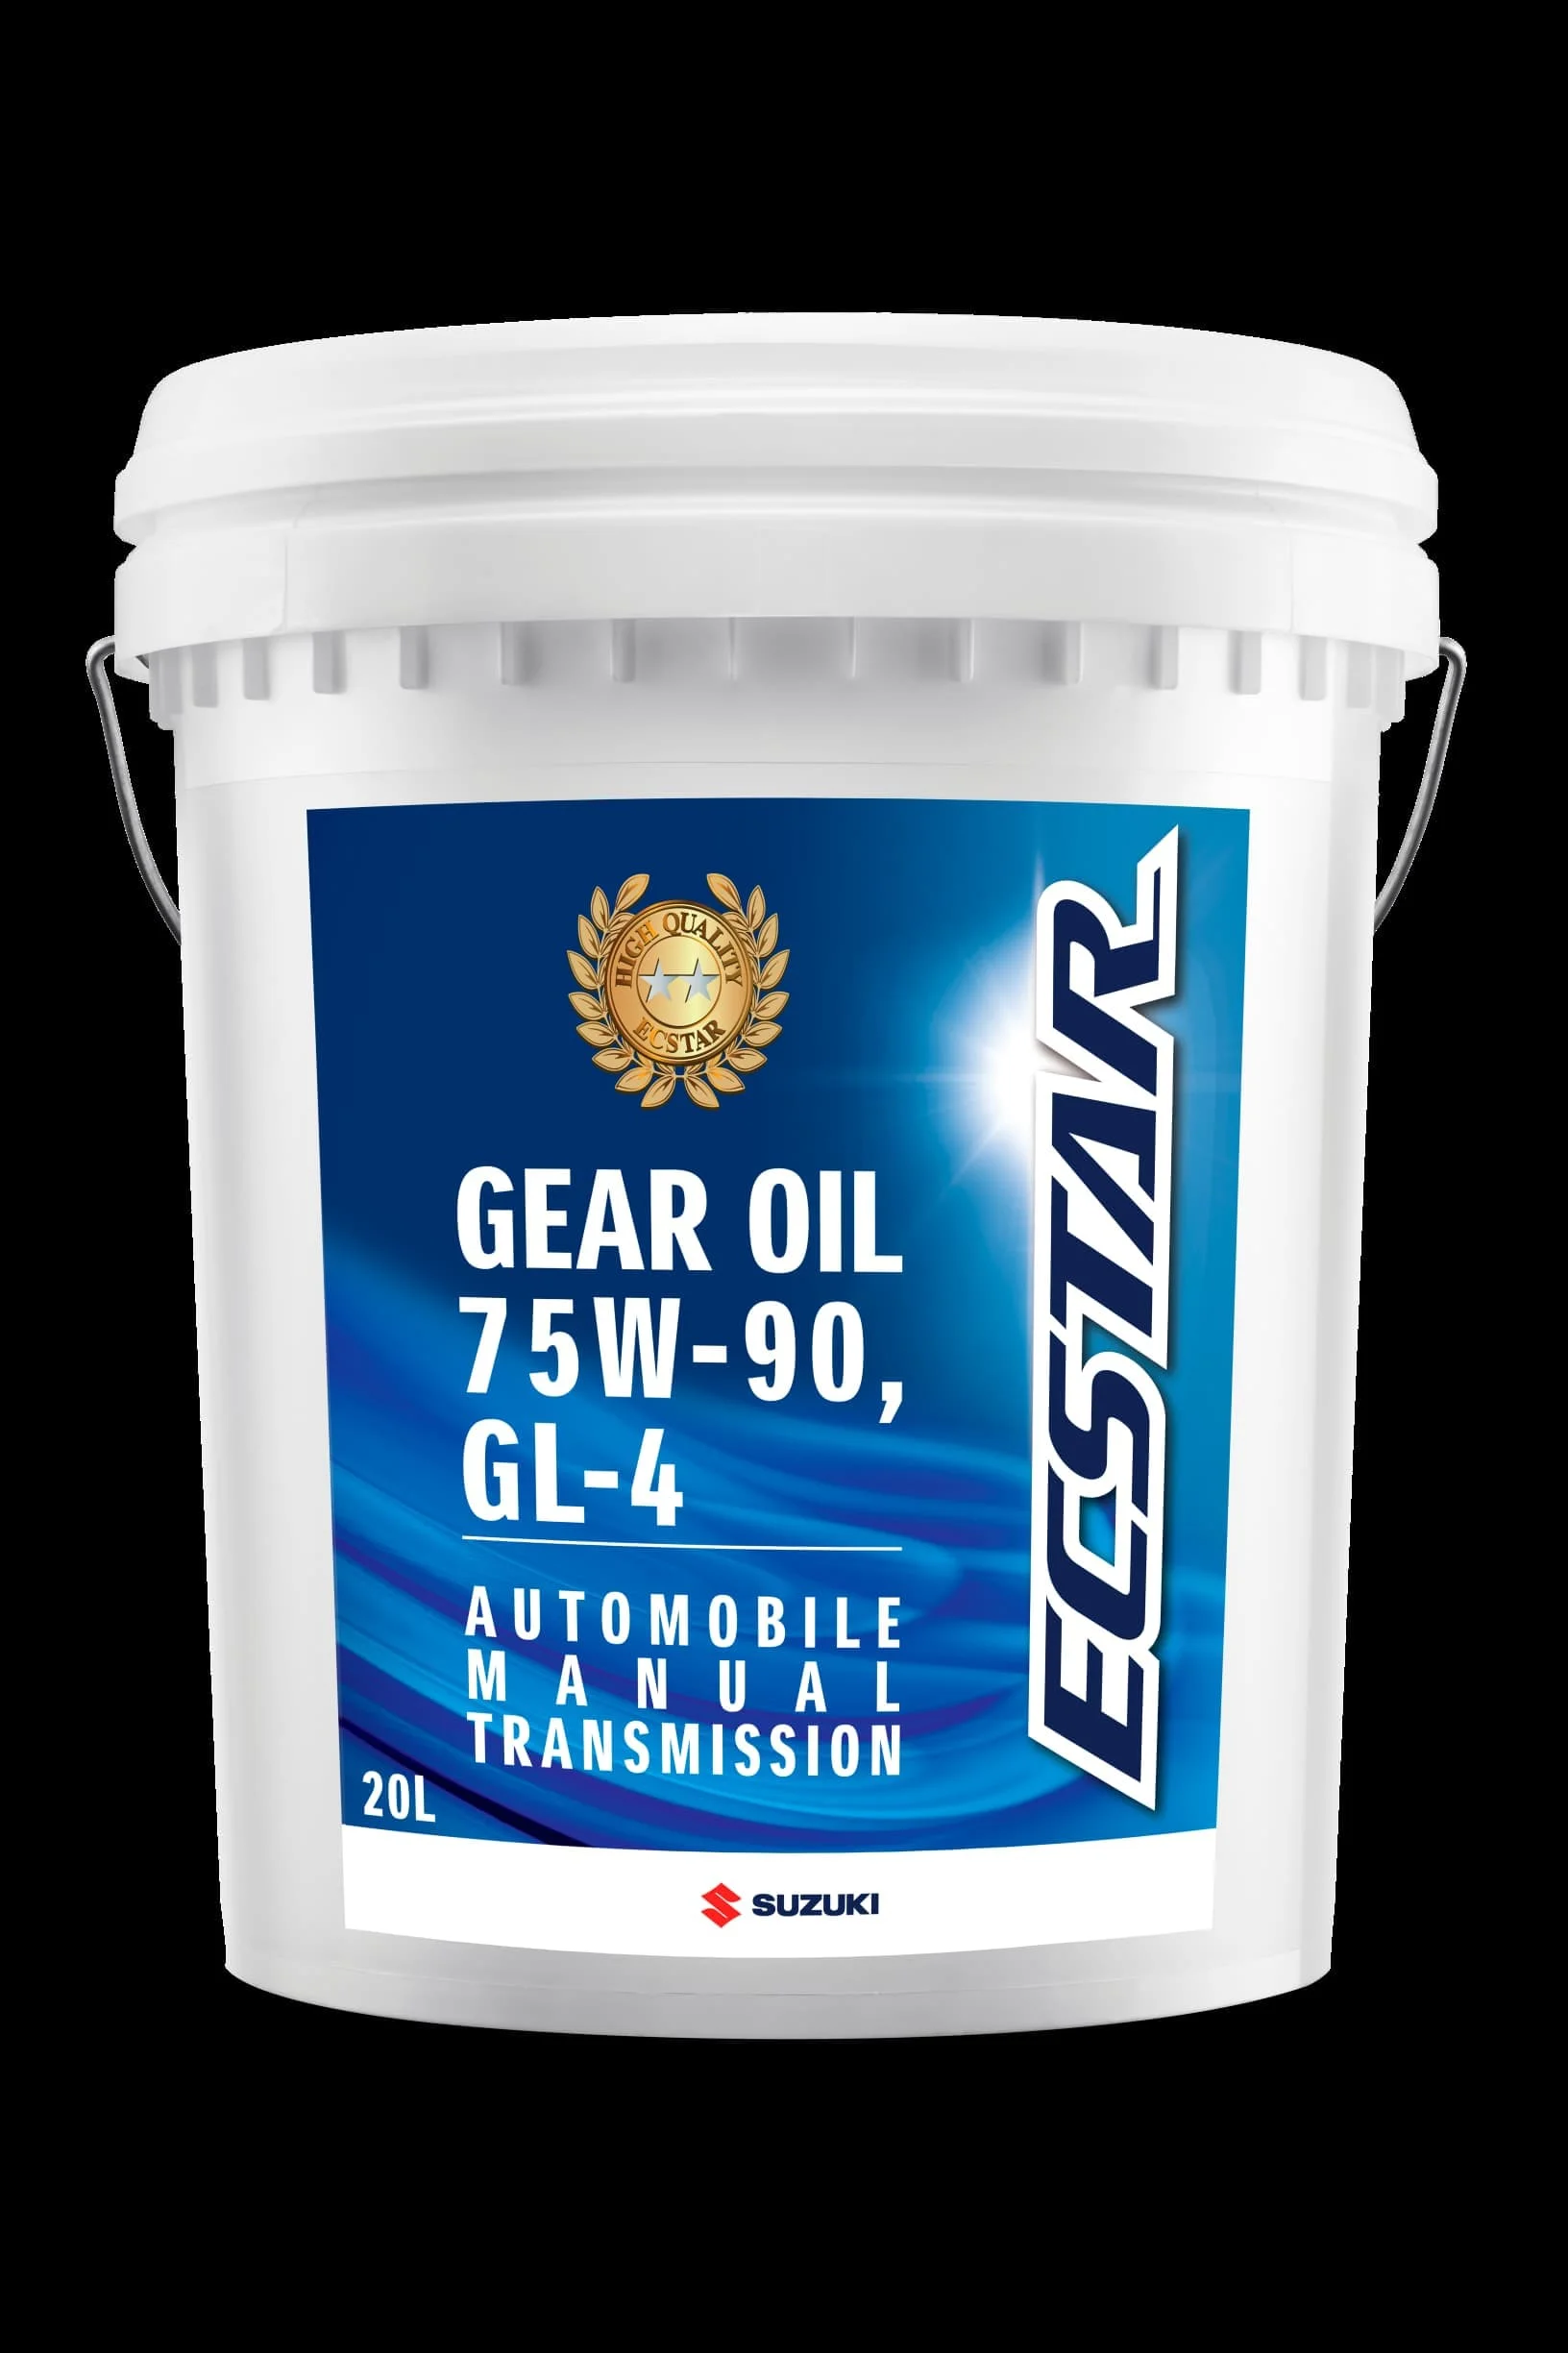 Suzuki Hadirkan Rangkaian Gear Oil Ecstar Terbaru